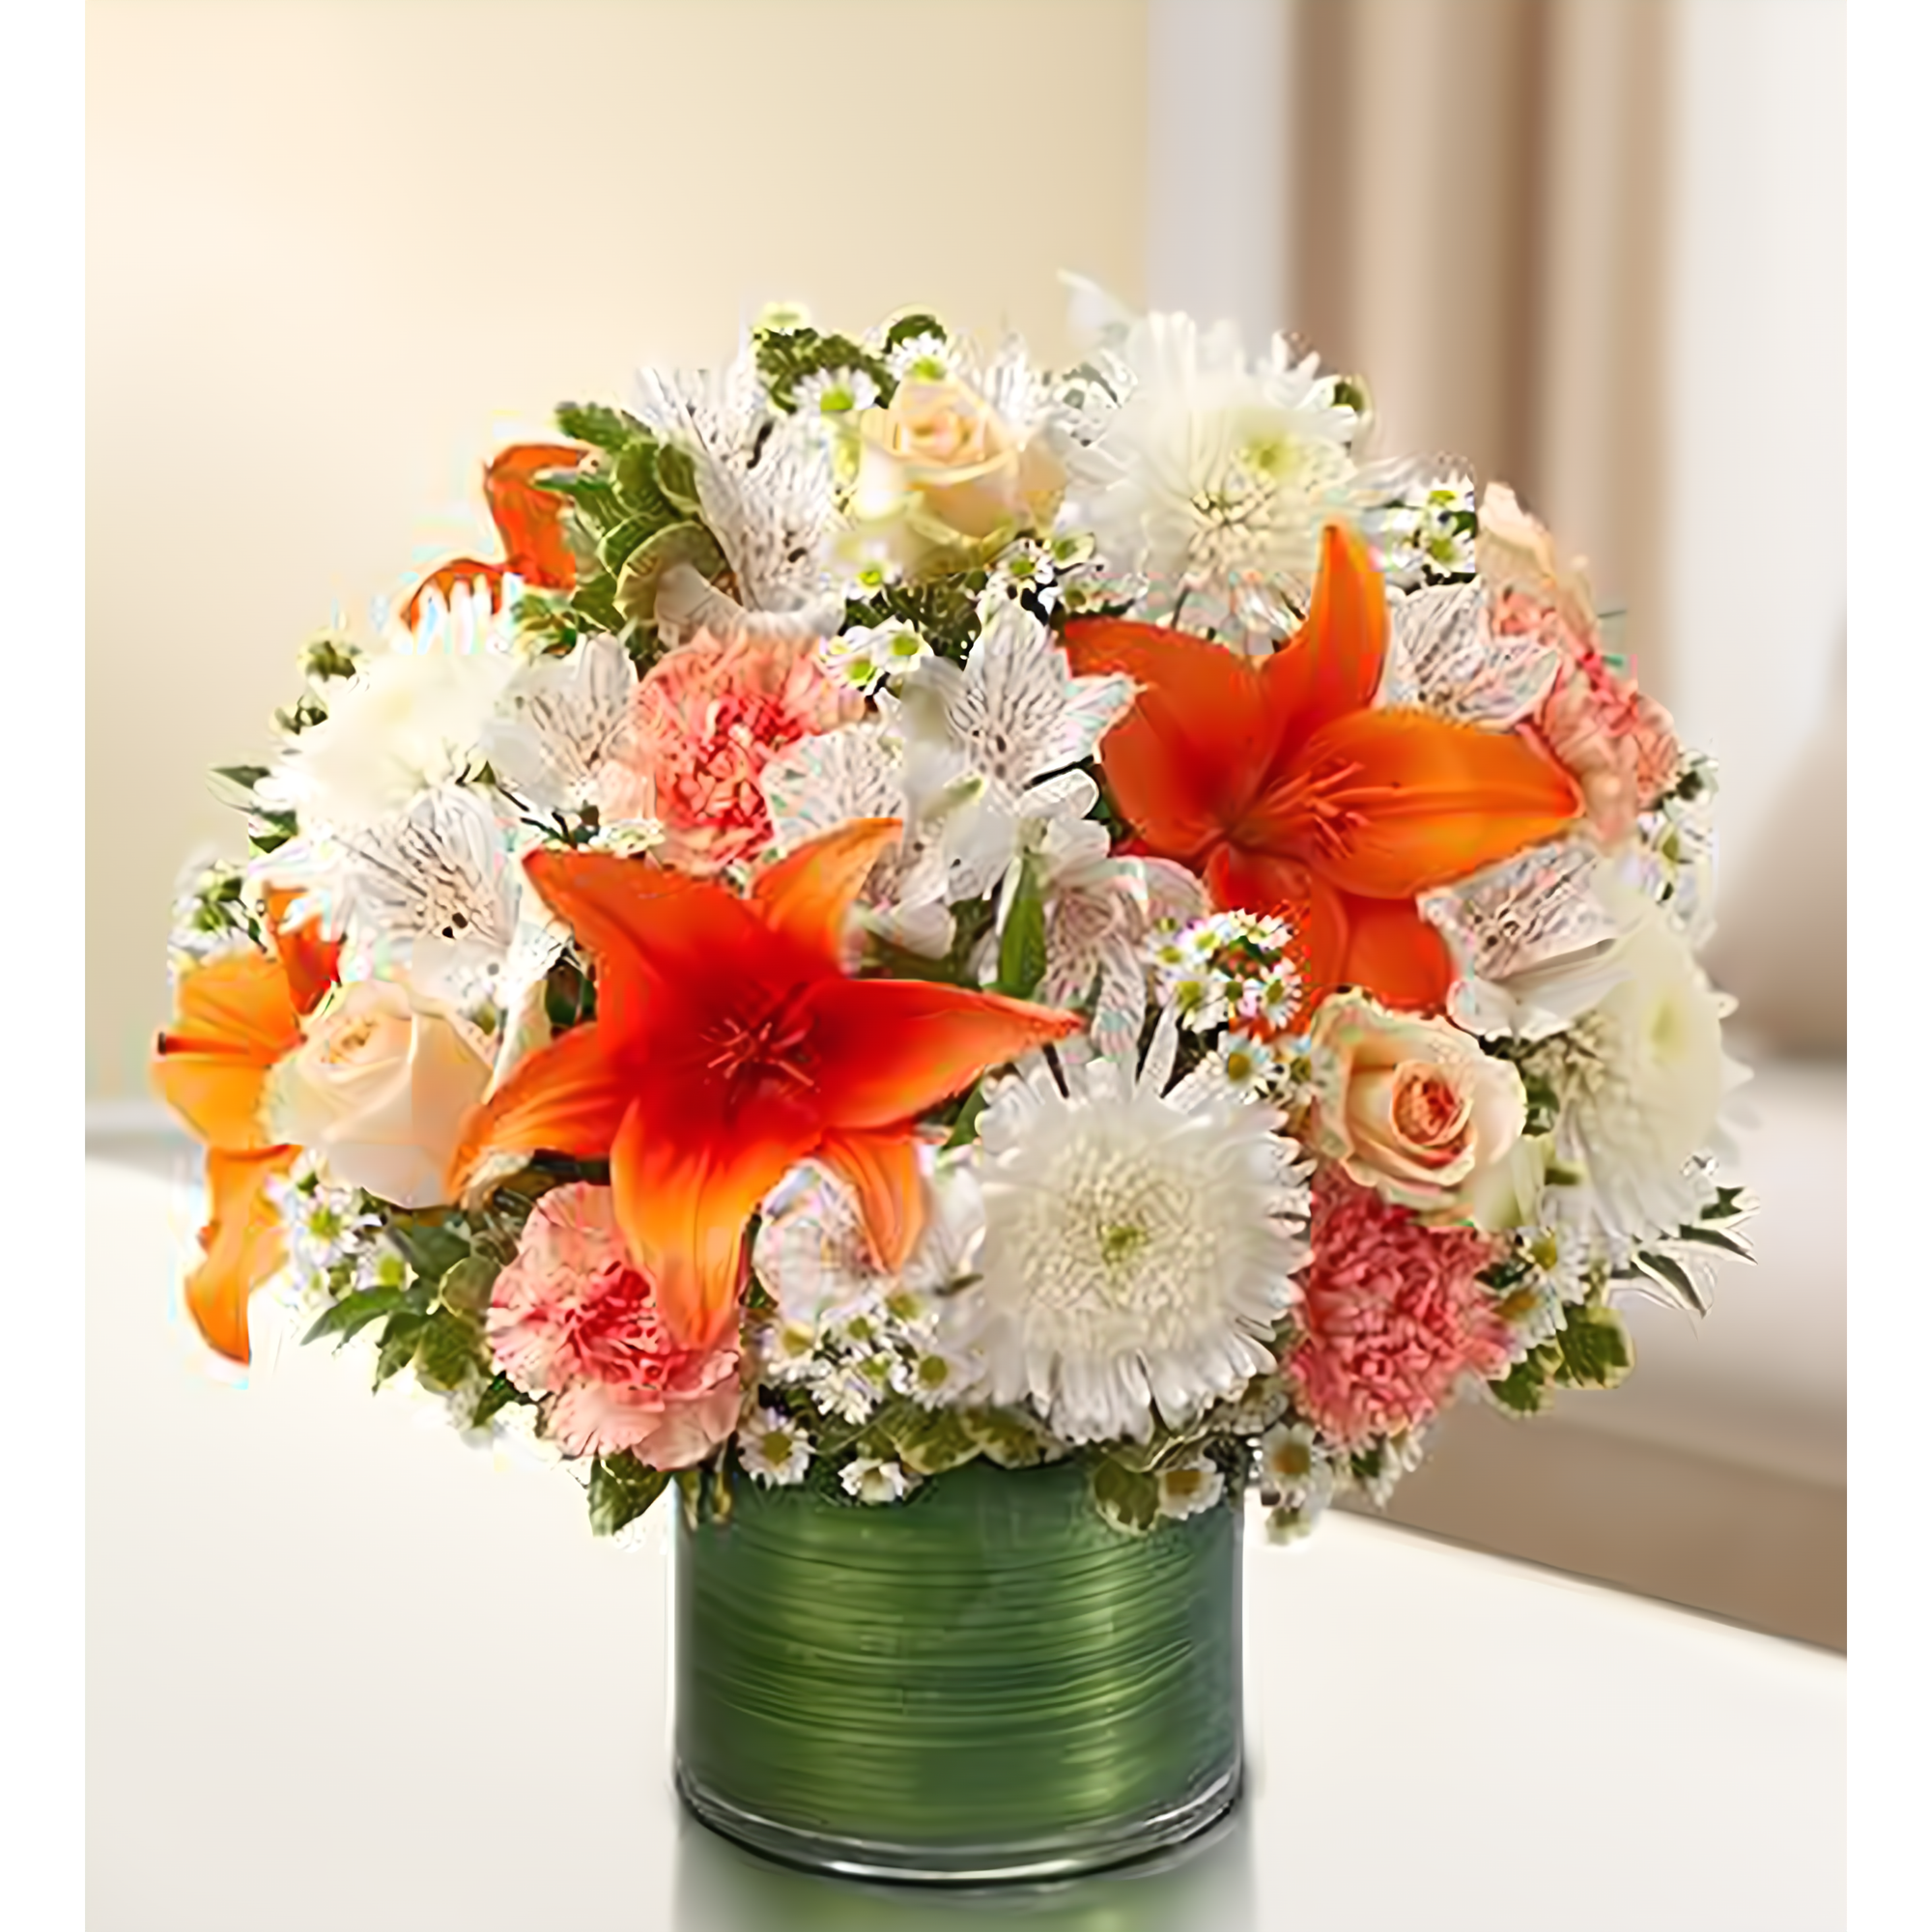 Manhattan Flower Delivery - Cherished Memories - Peach, Orange and White - Funeral > Vase Arrangements